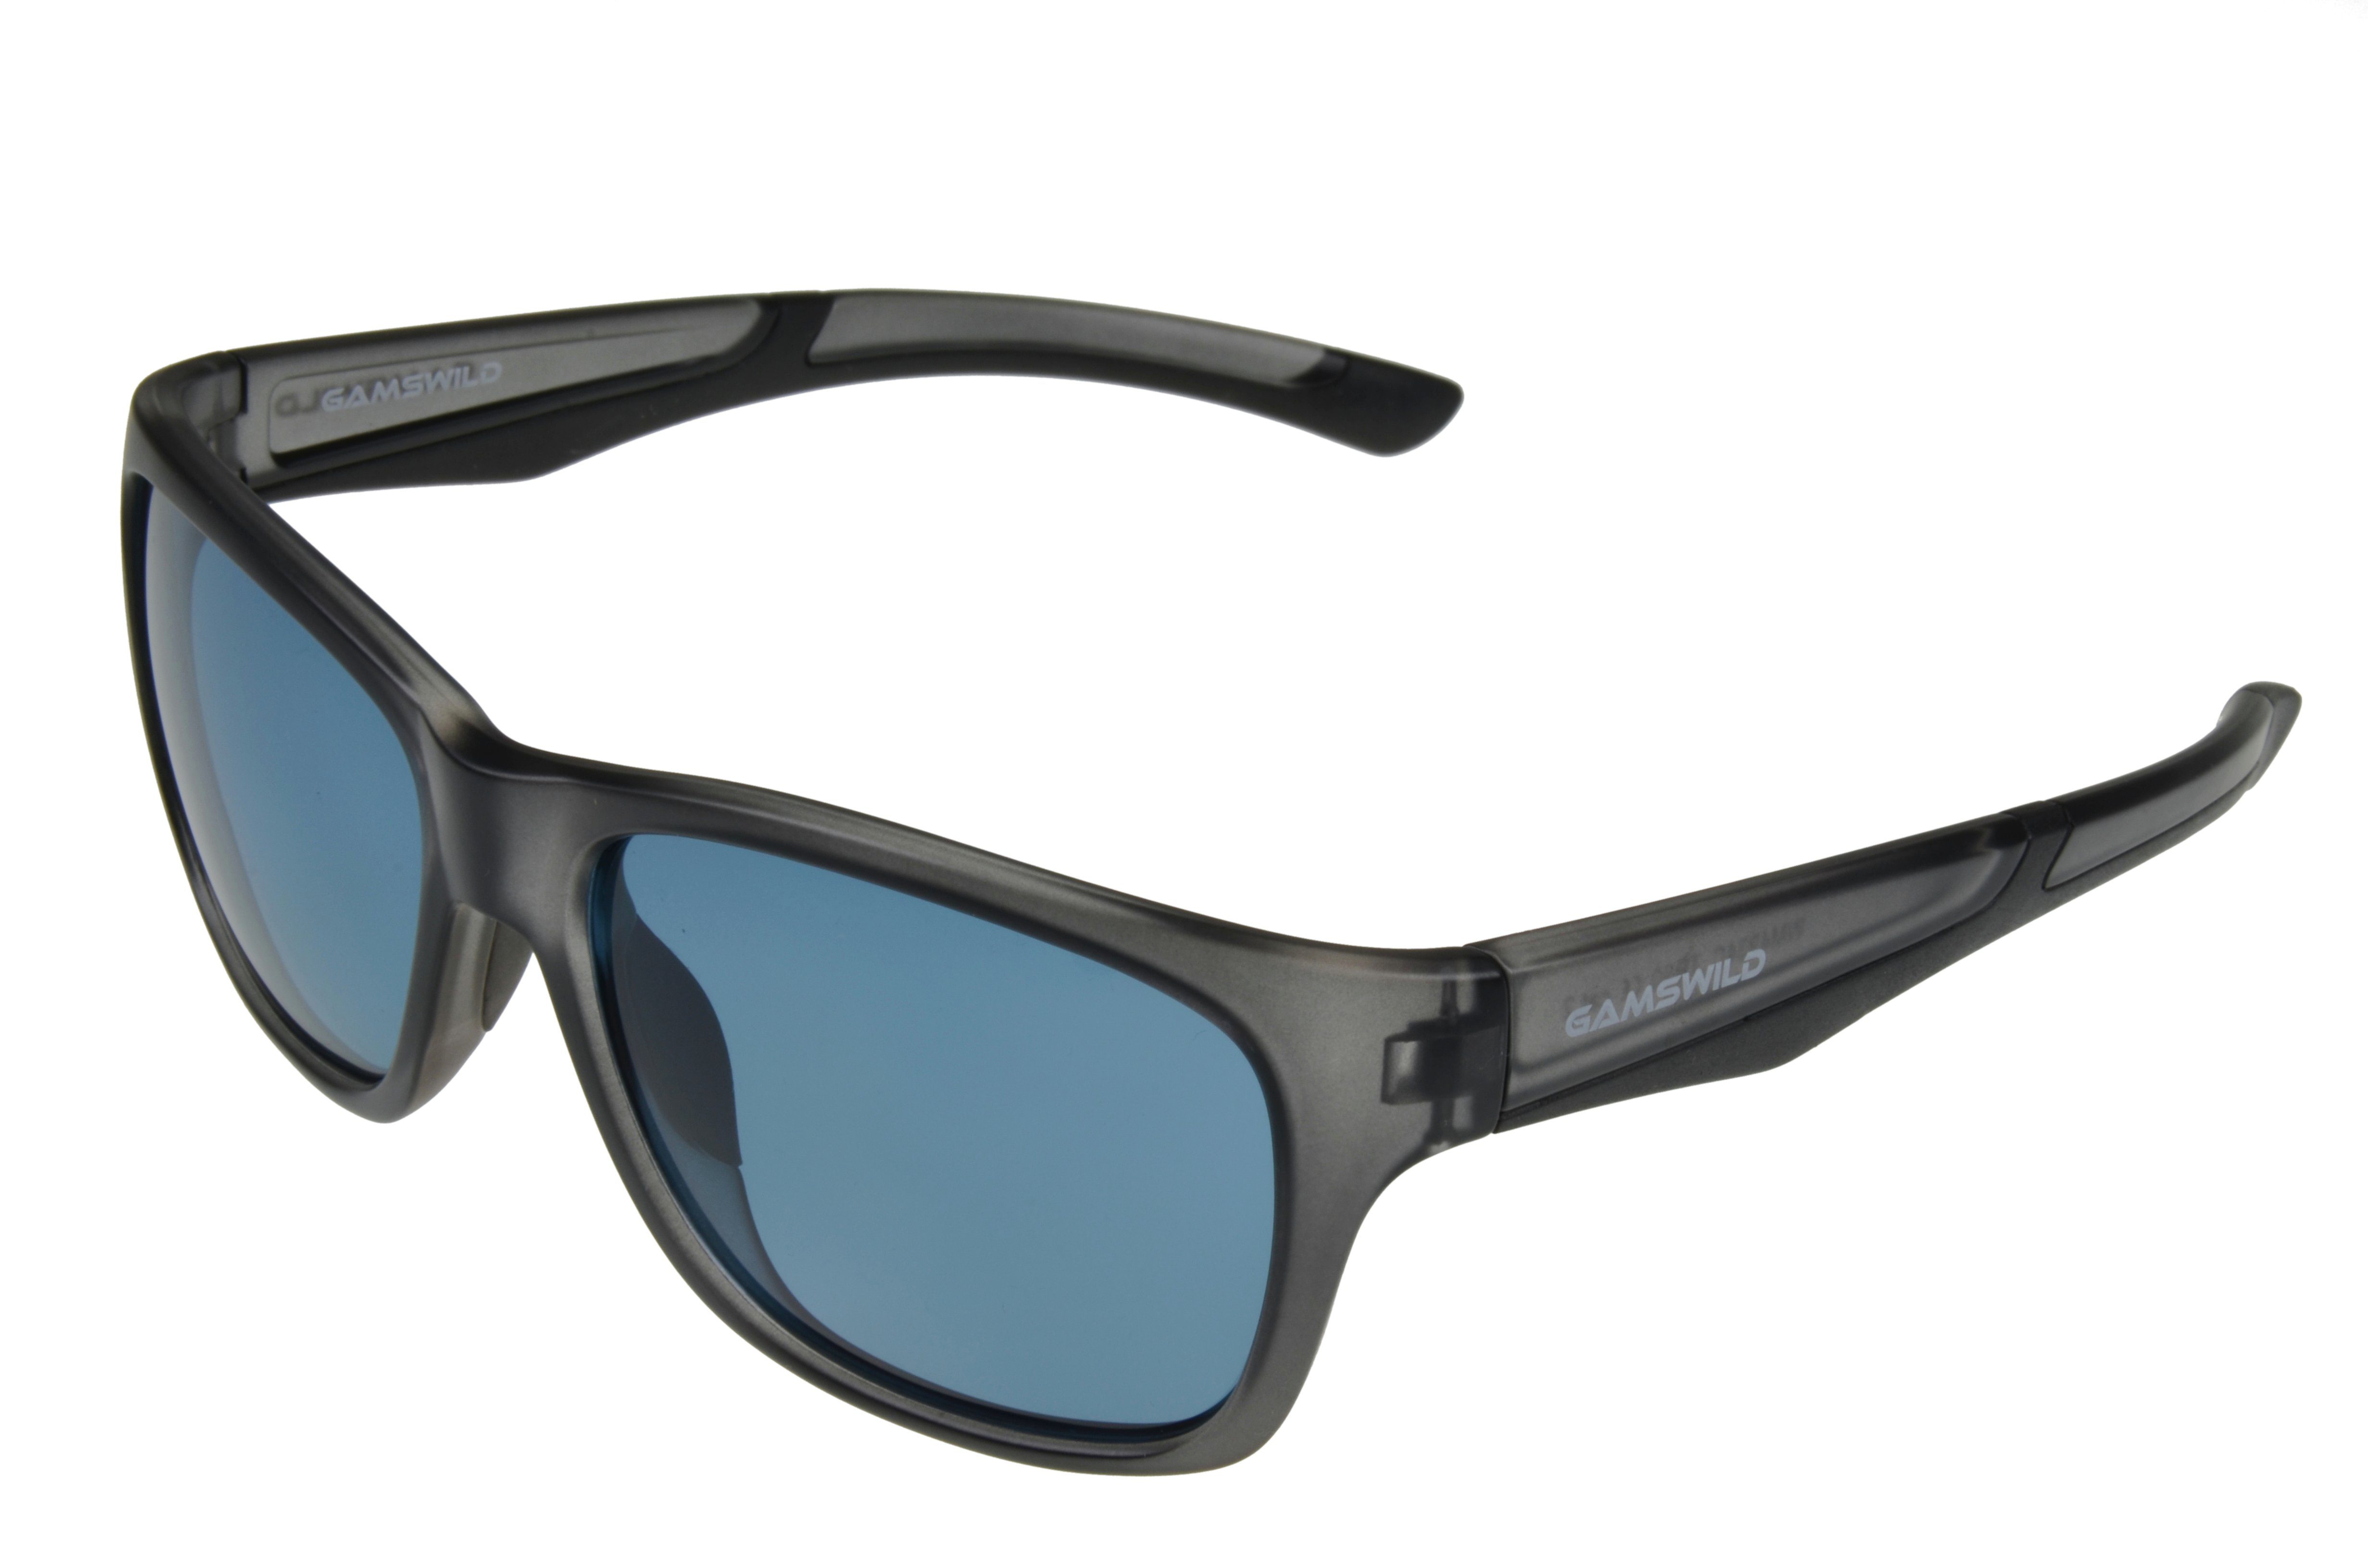 Gamswild Sonnenbrille WM4934 GAMSSTYLE Mode Brille Damen Herren Unisex TR90 TR90 Komfortbügel, grün, schwarz-grün, blau/grau -transparent grau-transparent